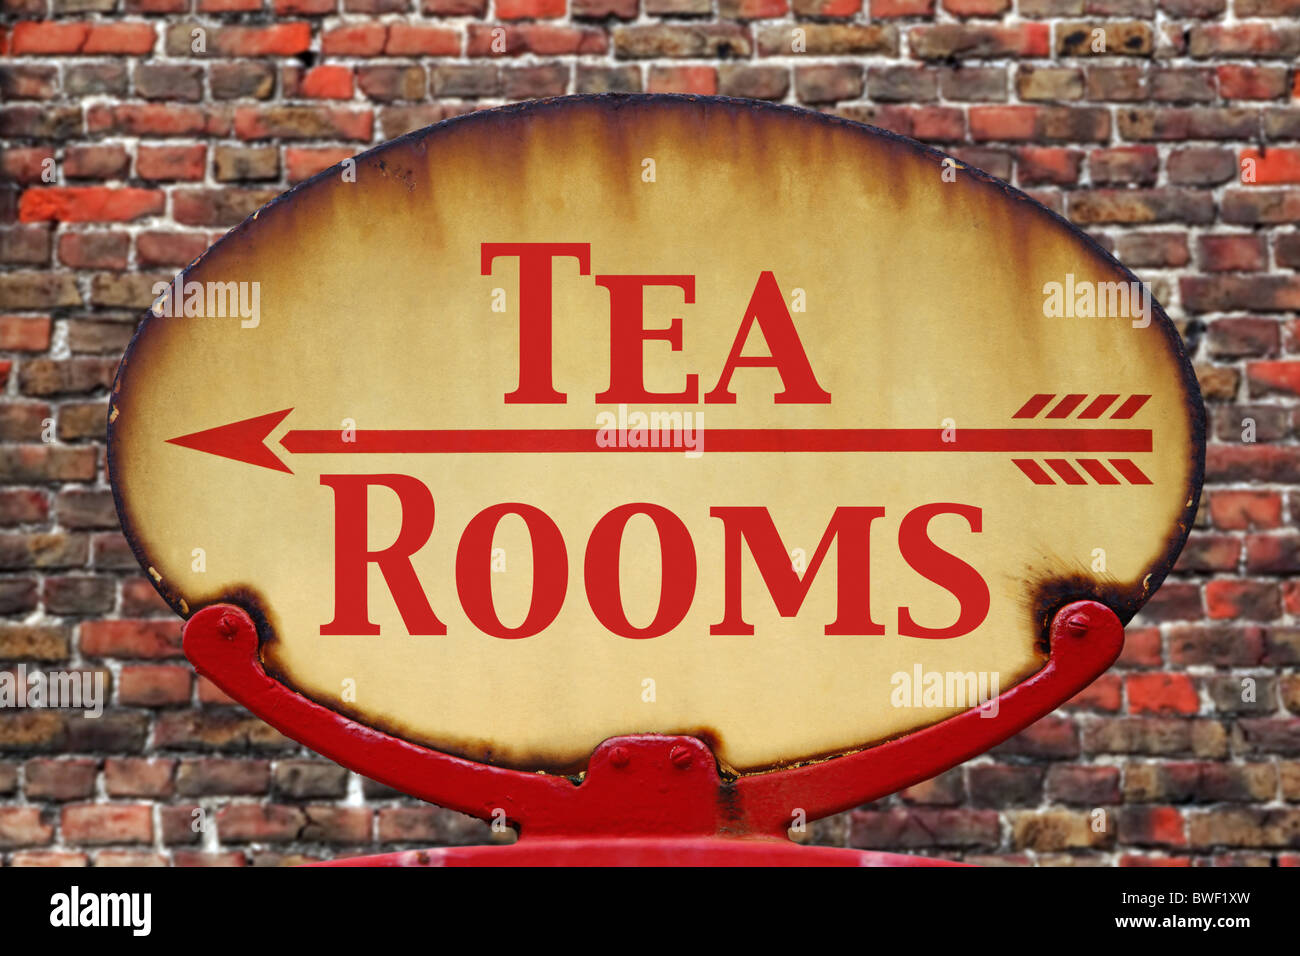 Un vieux rétro rouillé arrow sign avec le texte Tea rooms Banque D'Images